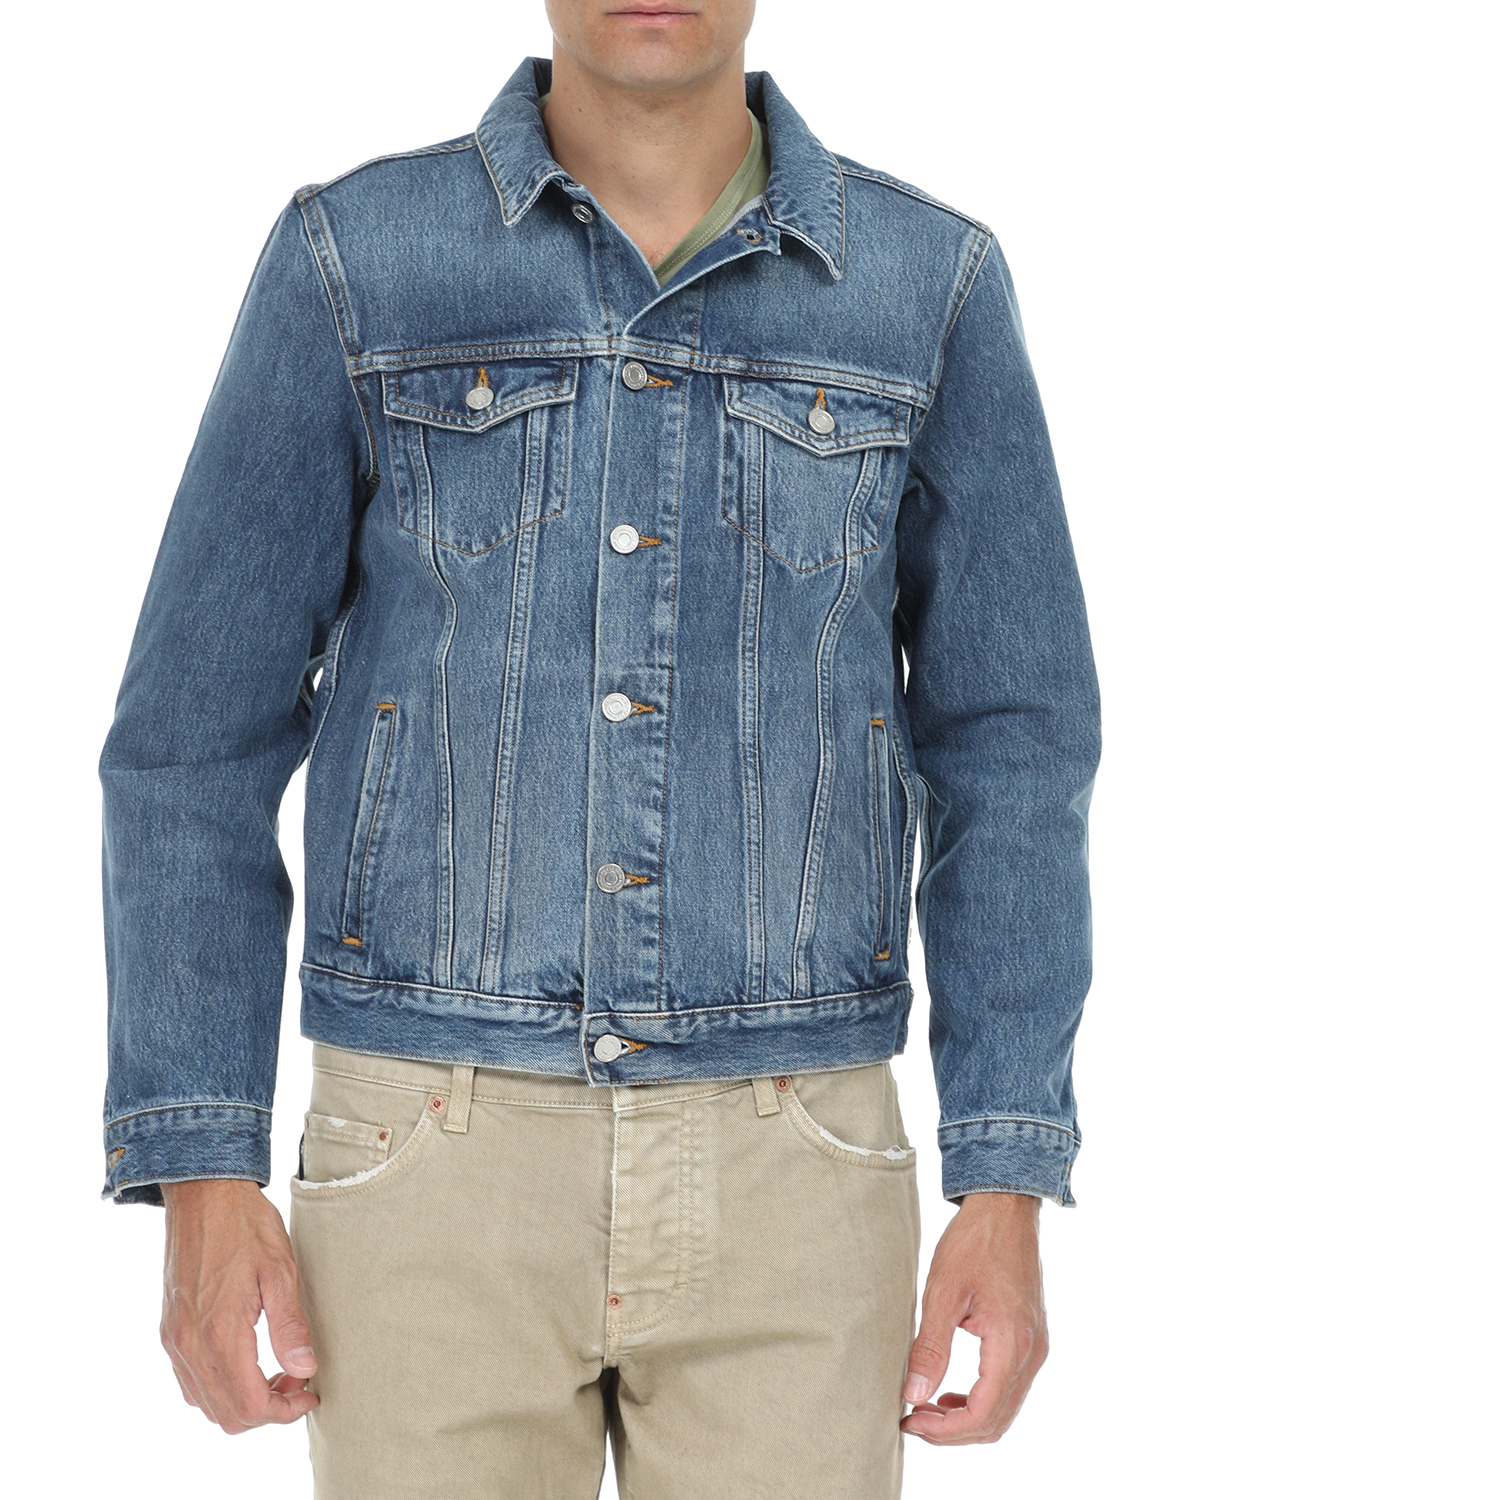 SCOTCH & SODA SCOTCH & SODA - Ανδρικό jean jacket SCOTCH & SODA Classic trucker μπλε